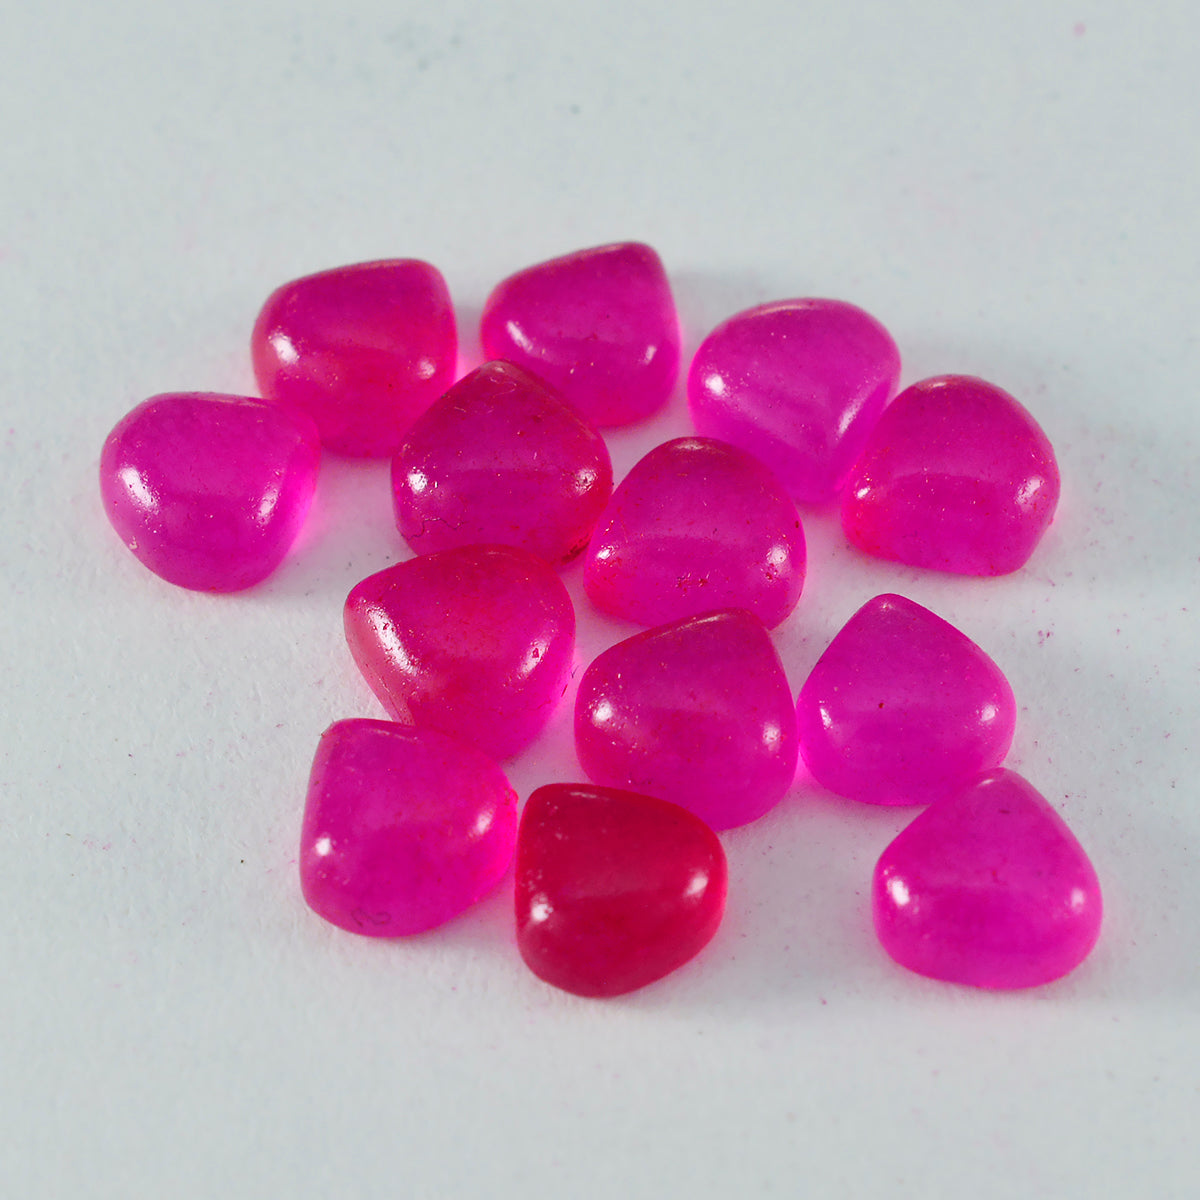 Riyogems 1 pieza cabujón de jaspe rojo 5x5 mm forma de corazón gemas de calidad atractivas